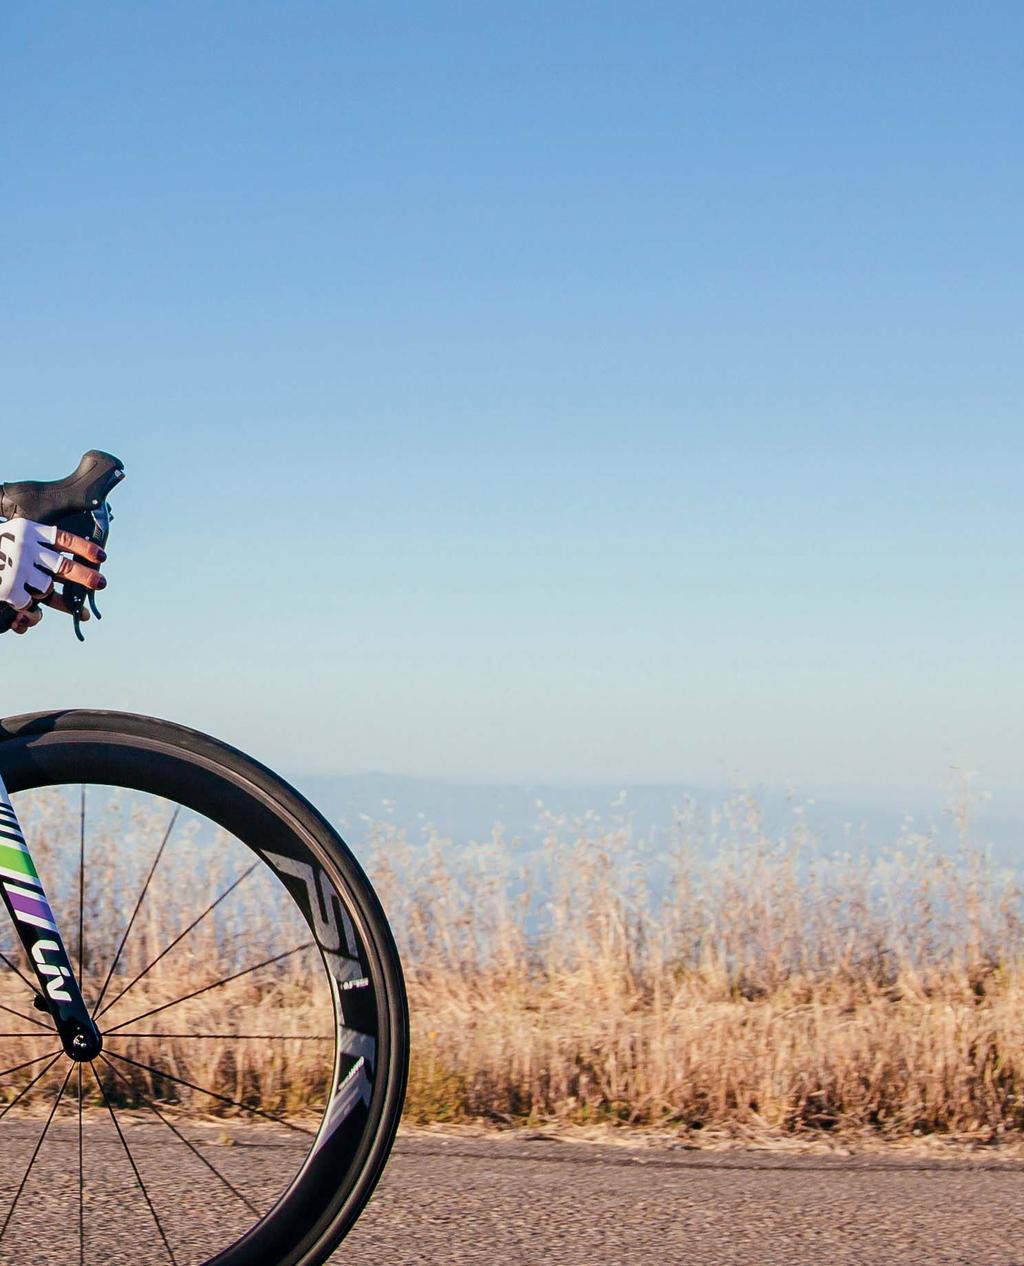 WILLKOMMEN BEI LIV Liv ist die einzige Radsportmarke die sich ausschließlich der Bedürfnisse weiblicher Fahrerinnen annimmt.